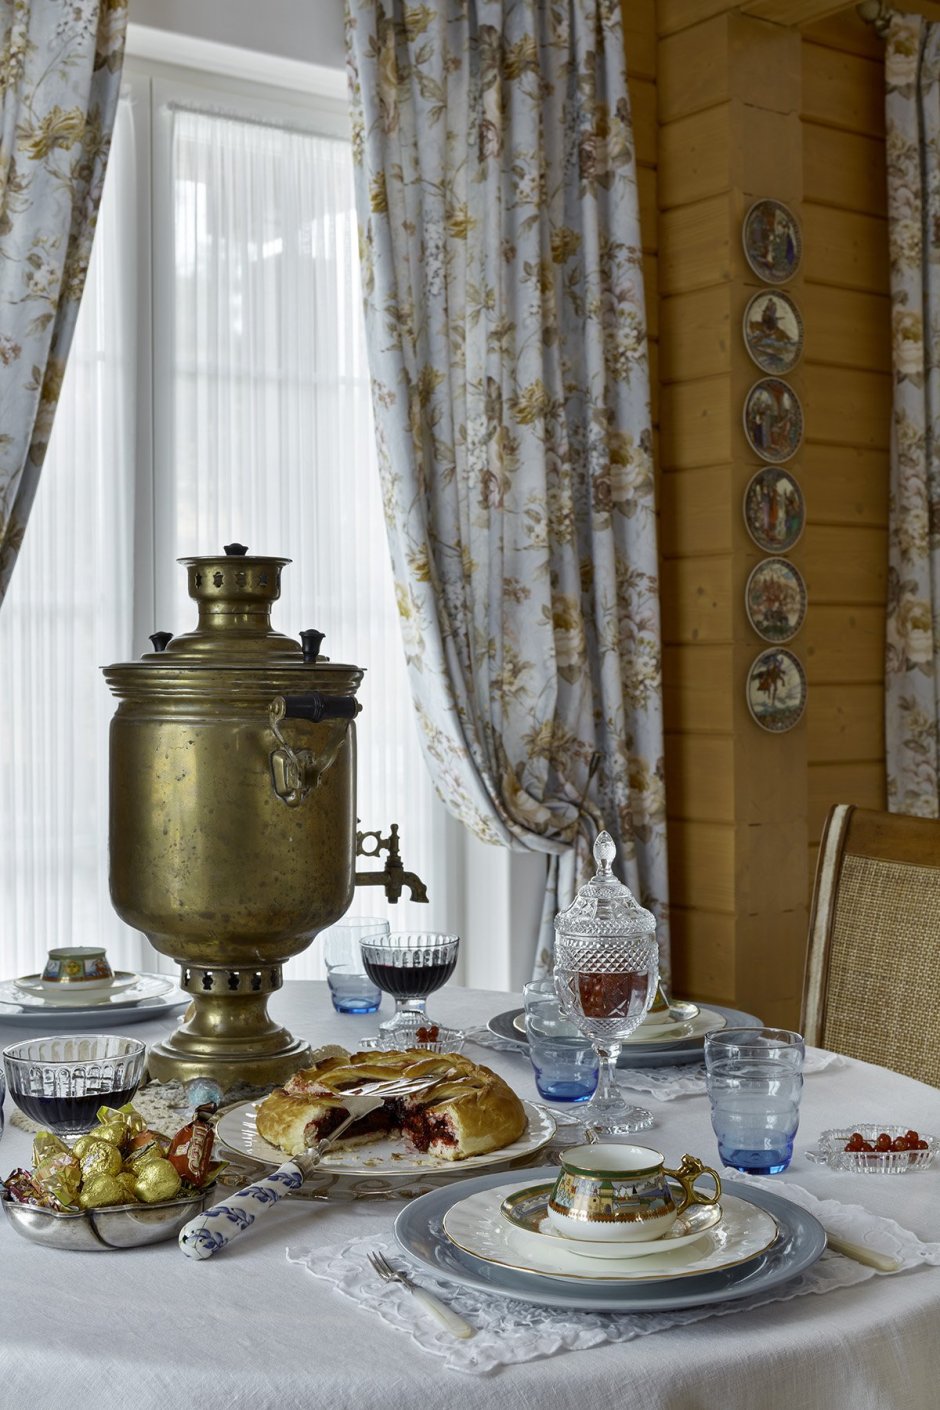 Кухня в стиле русской усадьбы